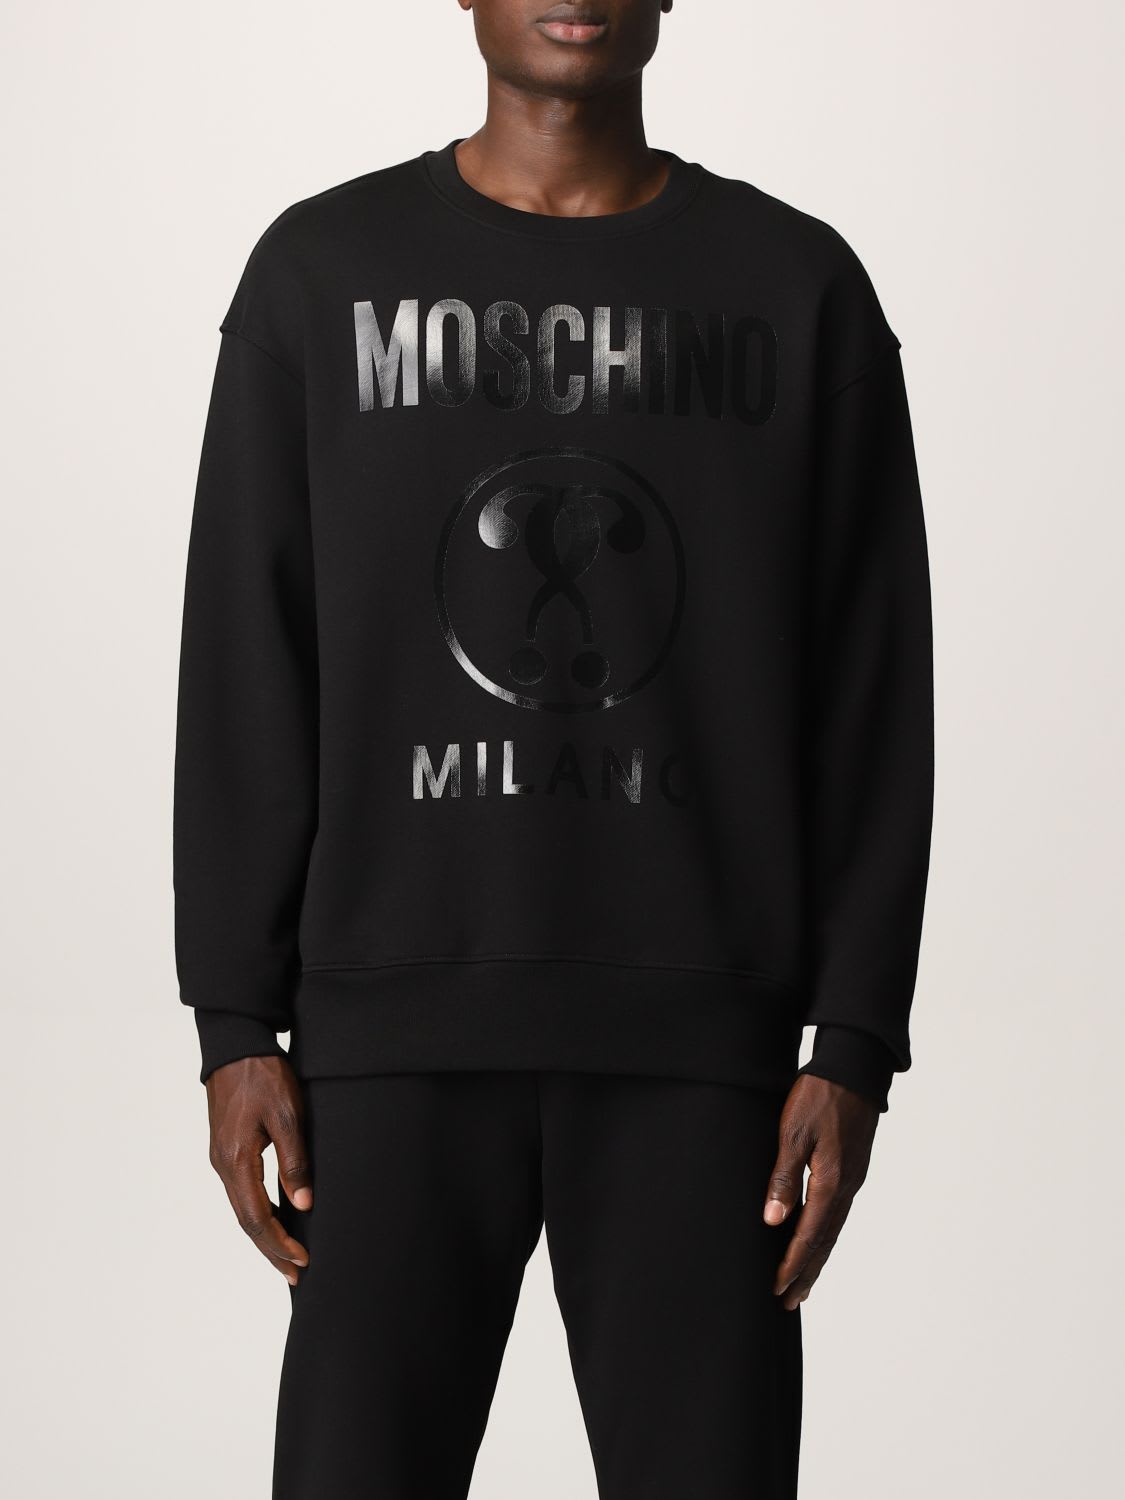 Moschino Couture Sweatshirt Moschino Couture Crewneck Sweatshirt With Big Logo